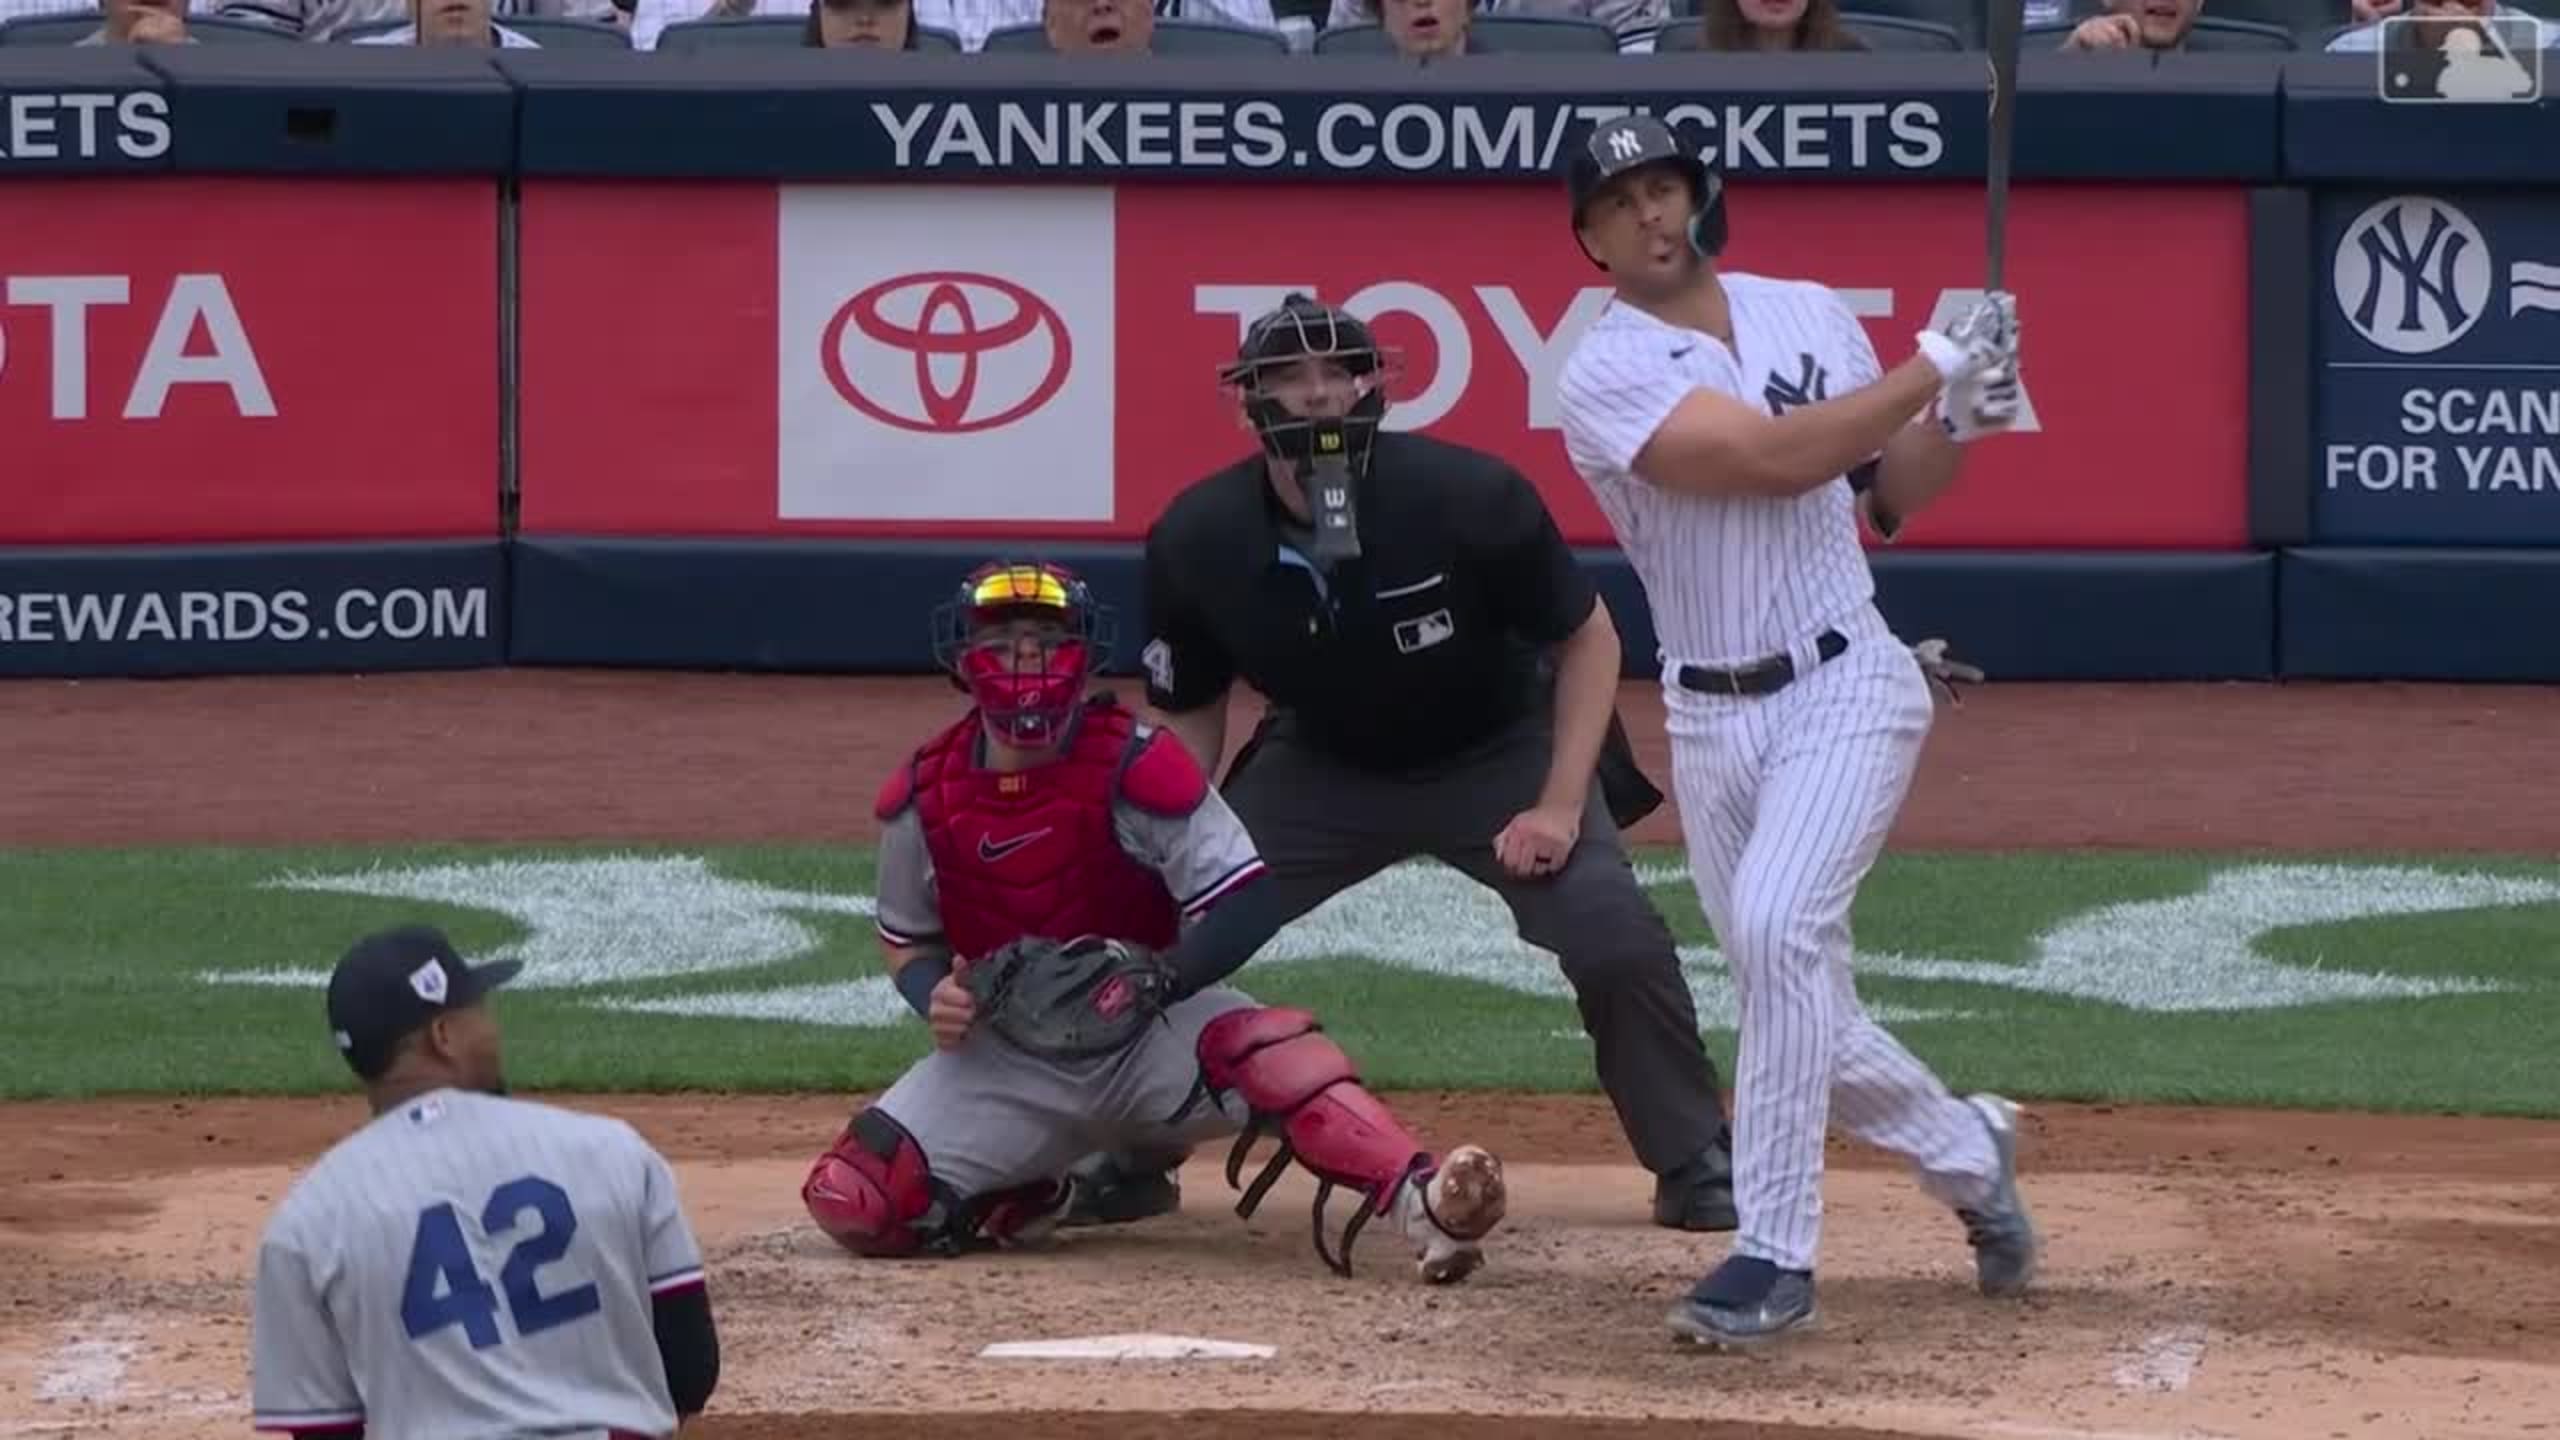 Giancarlo Stanton injury update: Yankees star (knee) unlikely to